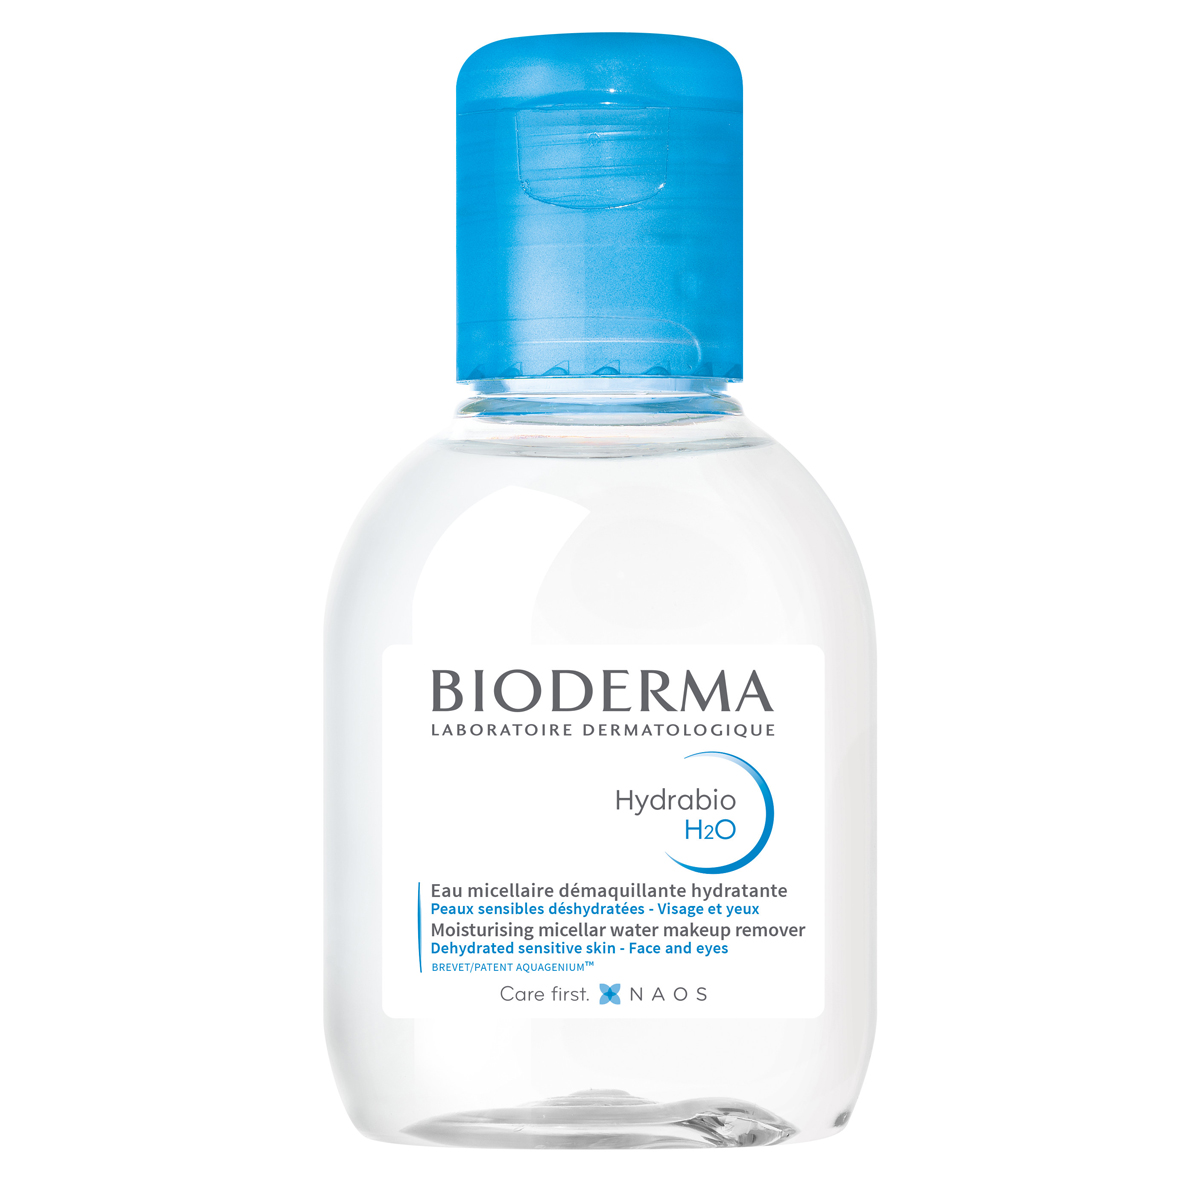 Bioderma Увлажняющая мицеллярная вода H2O, 100 мл (Bioderma,